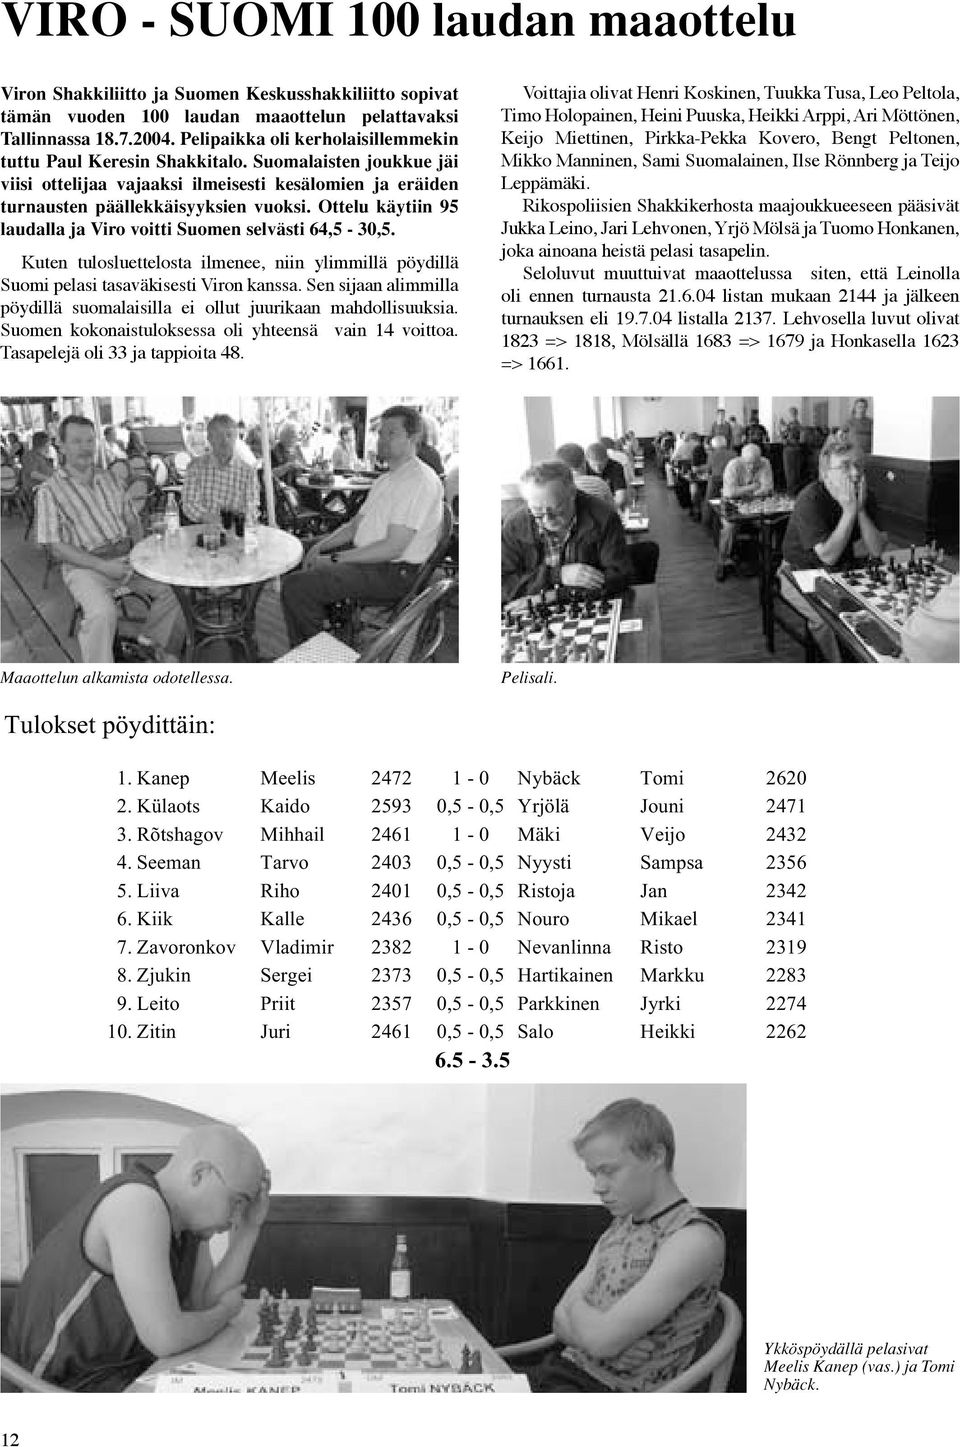 Pelipaikka oli kerholaisillemmekin Keijo Miettinen, Pirkka-Pekka Kovero, Bengt Peltonen, tuttu Paul Keresin Shakkitalo.